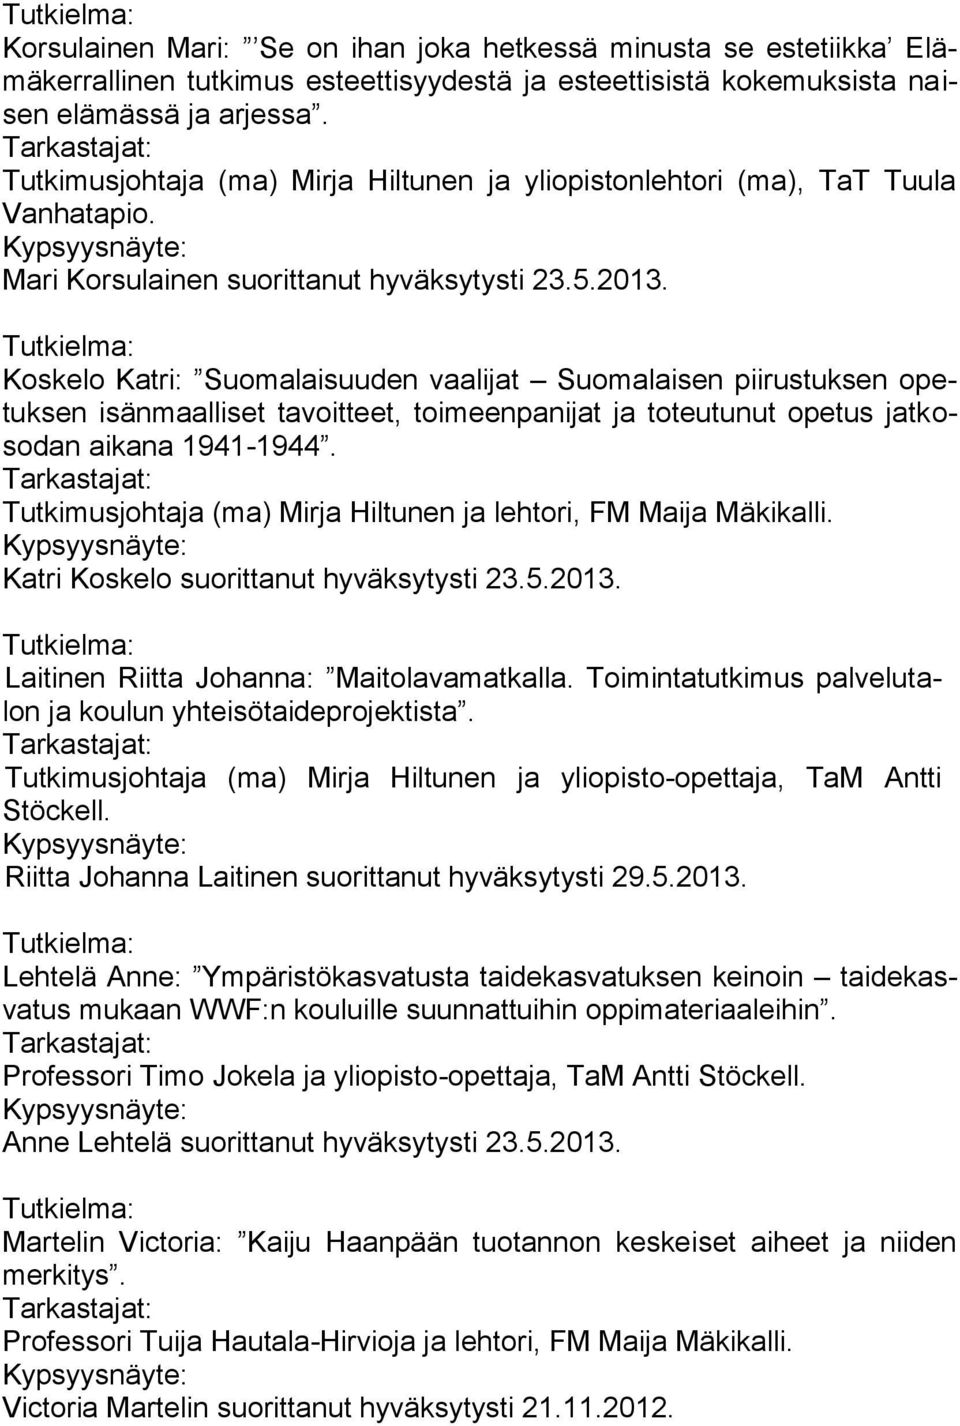 Koskelo Katri: Suomalaisuuden vaalijat Suomalaisen piirustuksen opetuksen isänmaalliset tavoitteet, toimeenpanijat ja toteutunut opetus jatkosodan aikana 1941-1944.